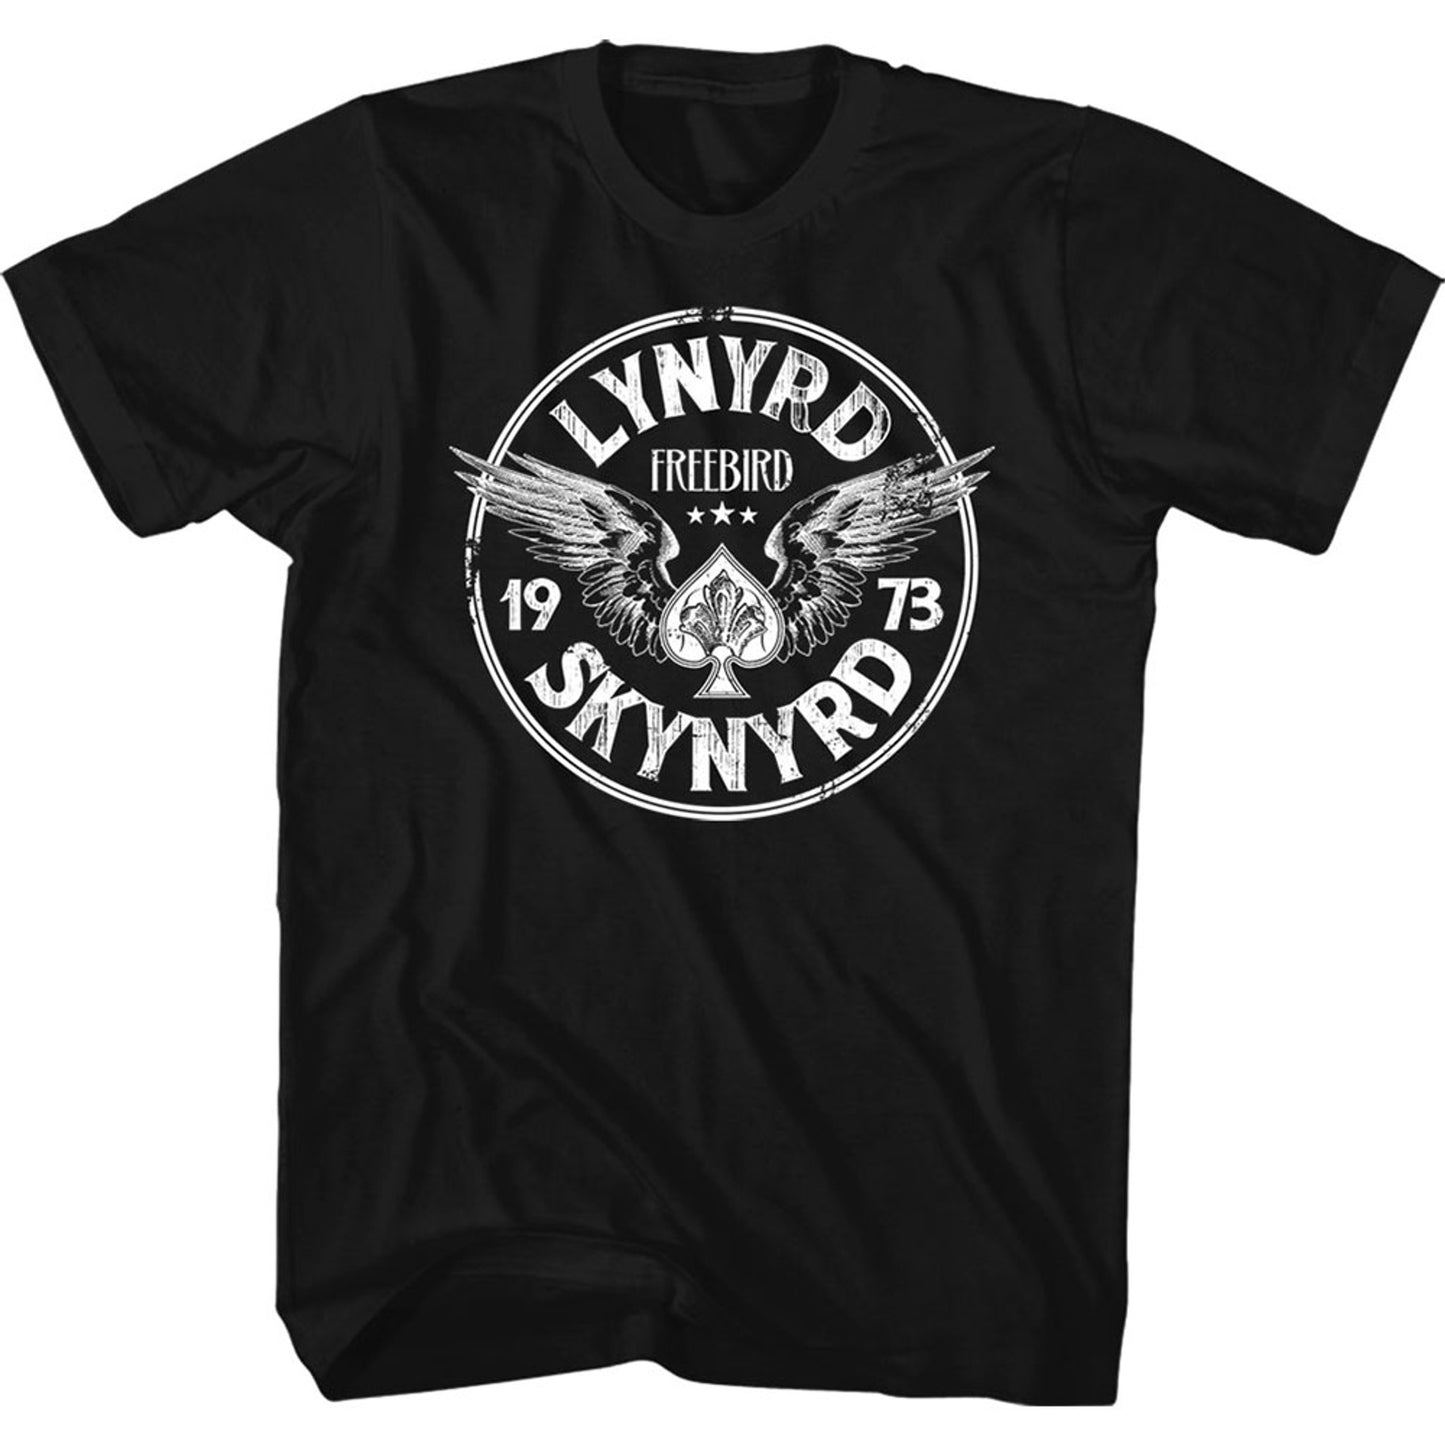 Lynyrd Skynyrd Freebird 1973 T-Shirt